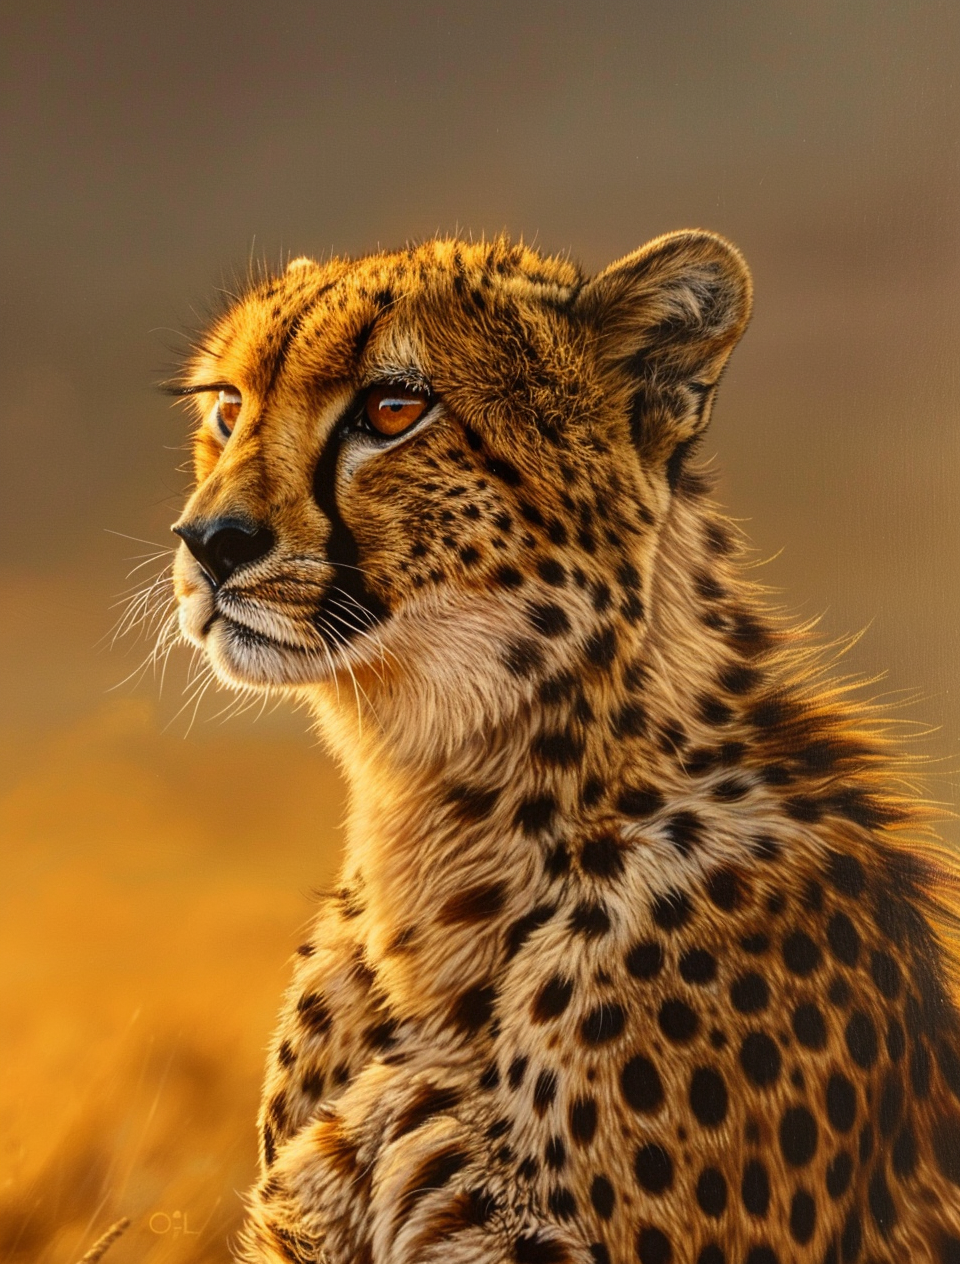 Cheetah Savannah Sunset 2.0